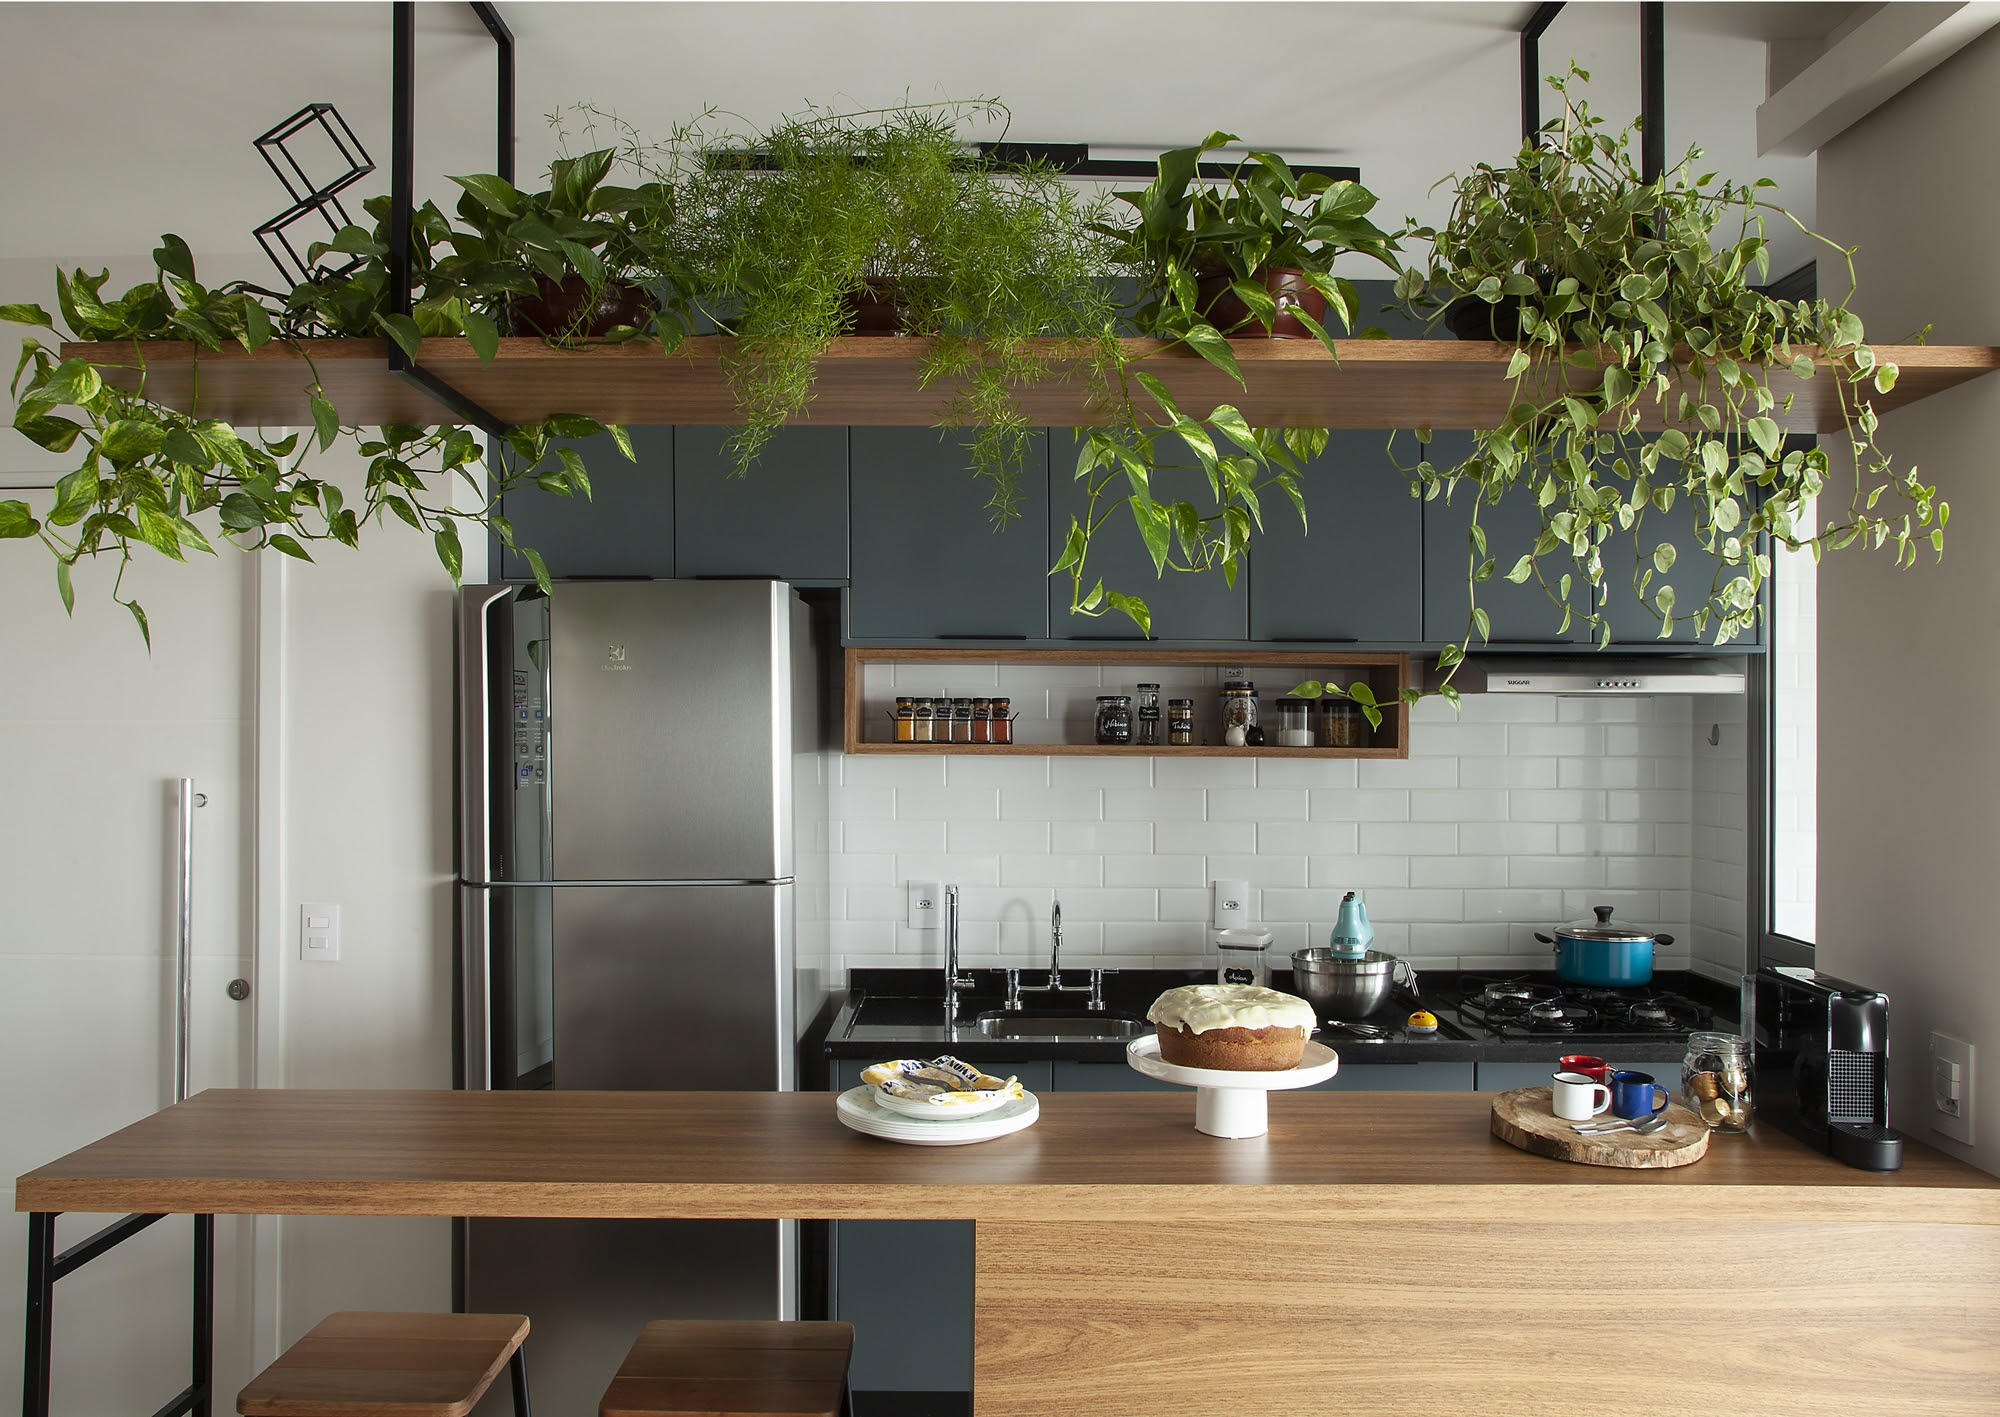 Cozinha com uma estante exibindo vasos de planta a cima da bancada